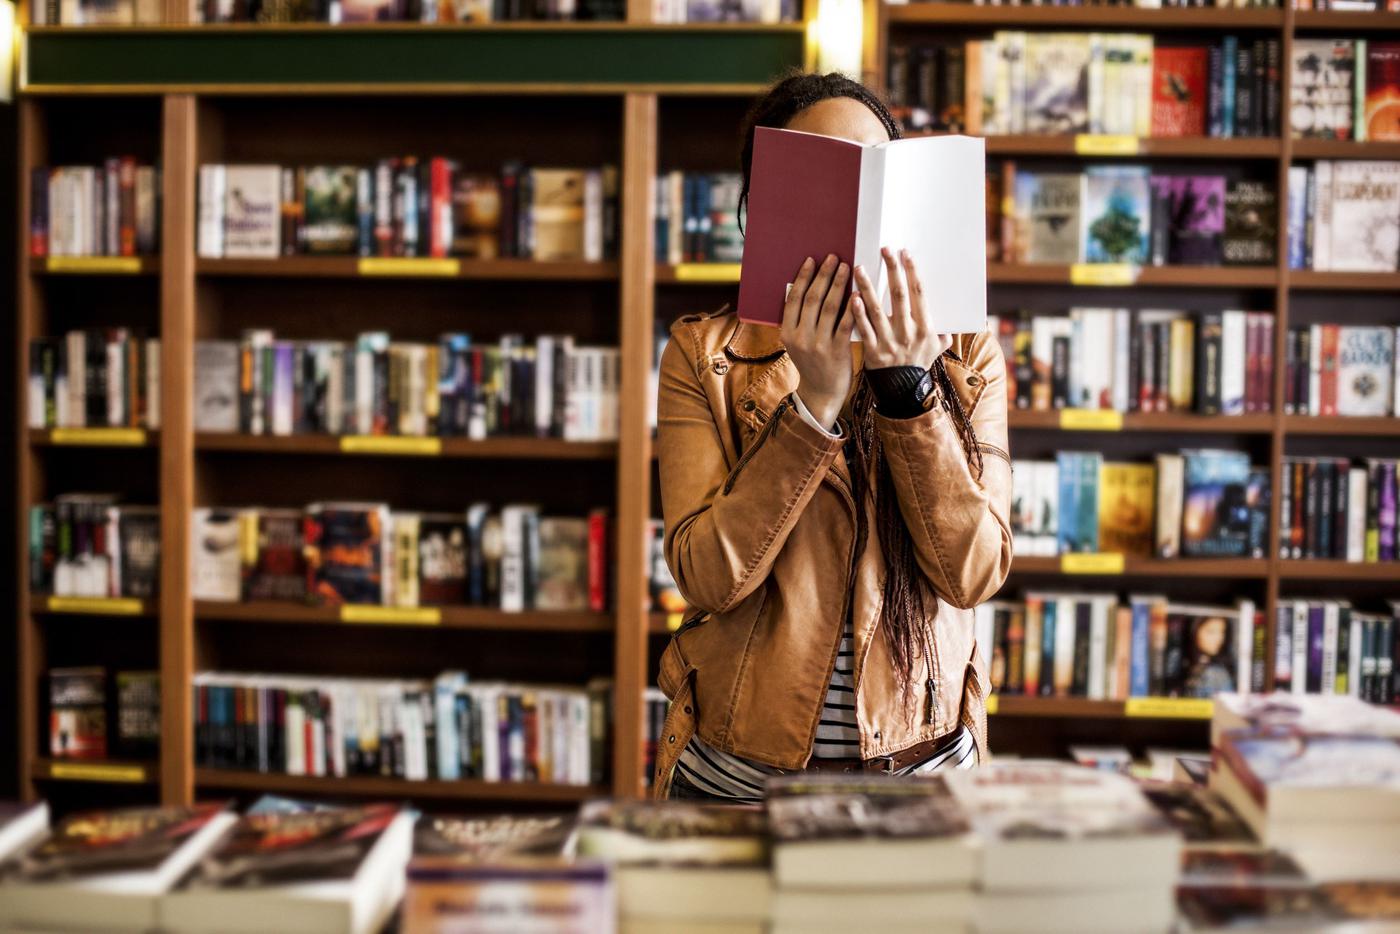 Девушка в книжном магазине